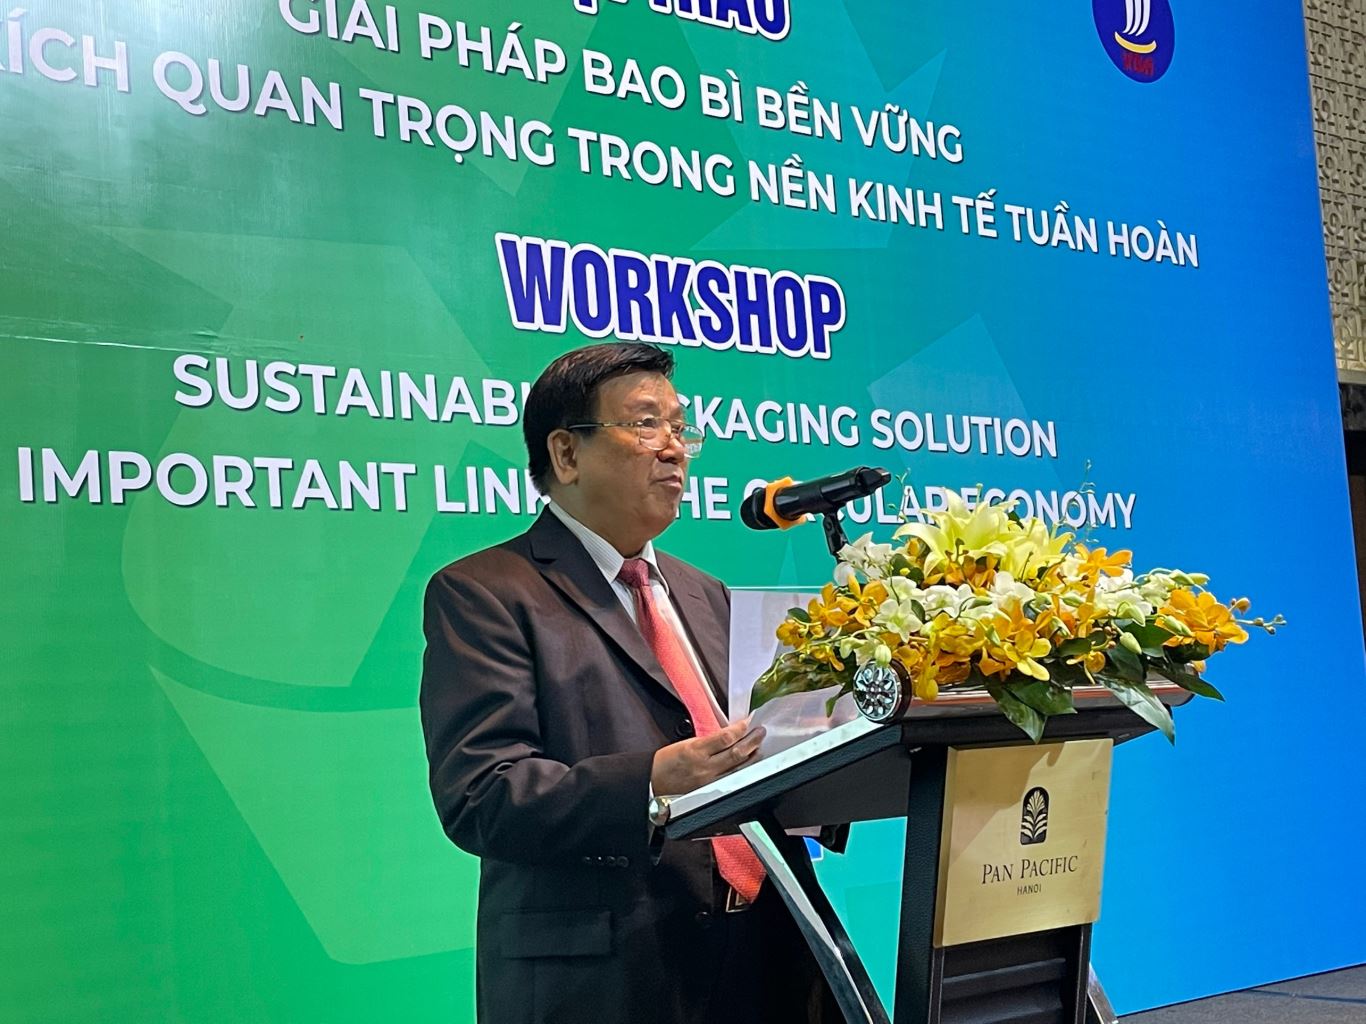 Giải pháp bao bì bền vững - Mắt xích quan trọng trong nền kinh tế tuần hoàn ở Việt Nam